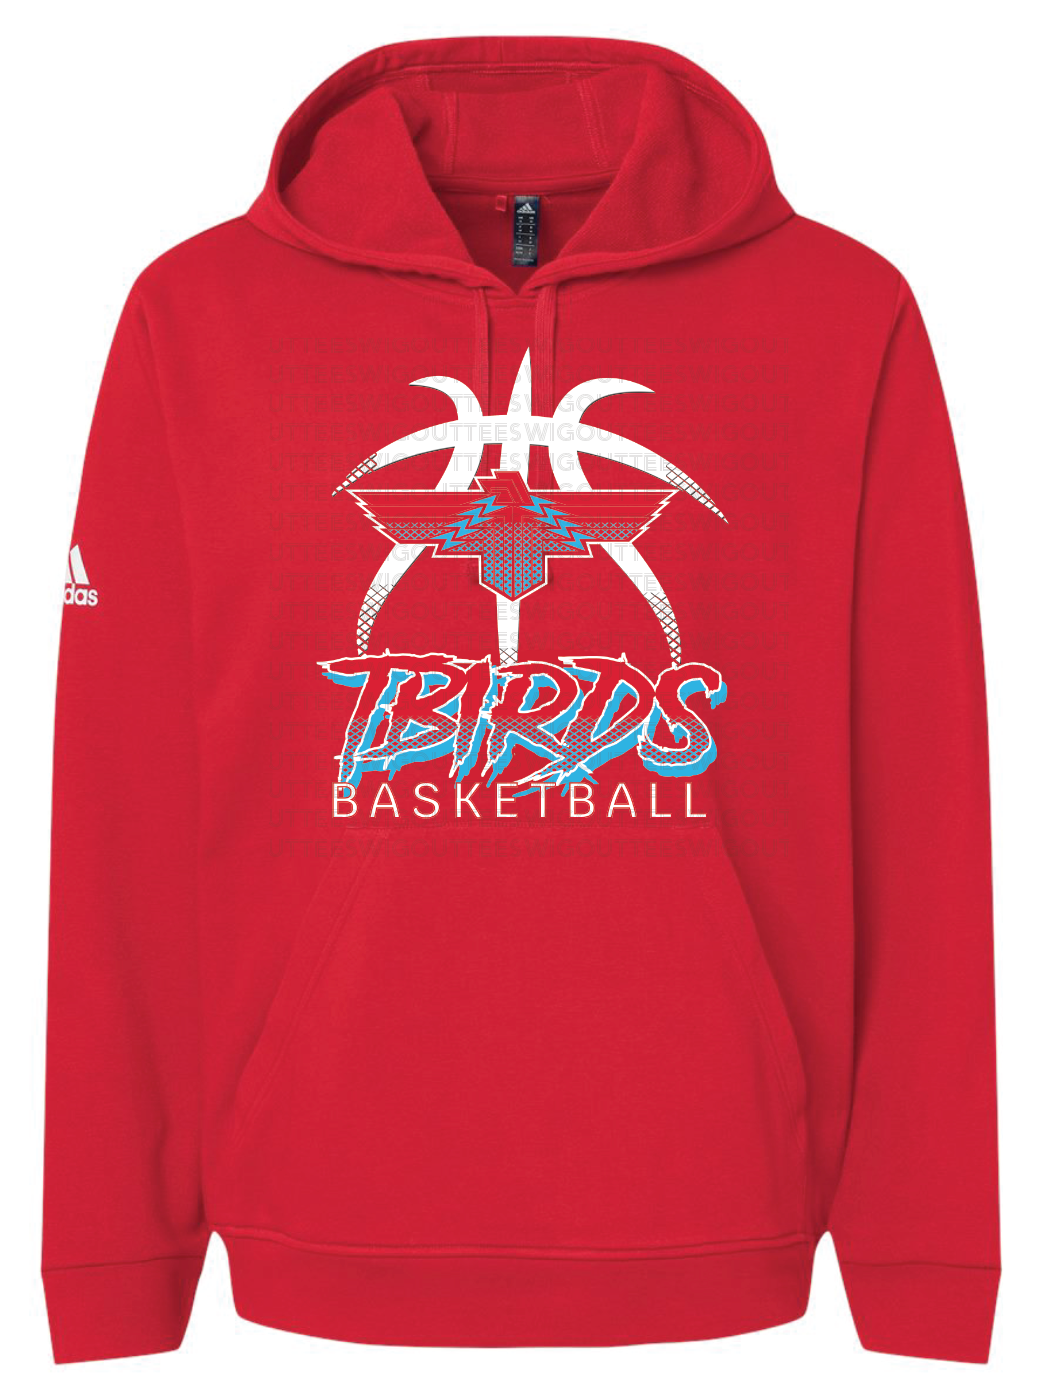 Tbirds Basketball Adidas Fleece Hooded Sweatshirt